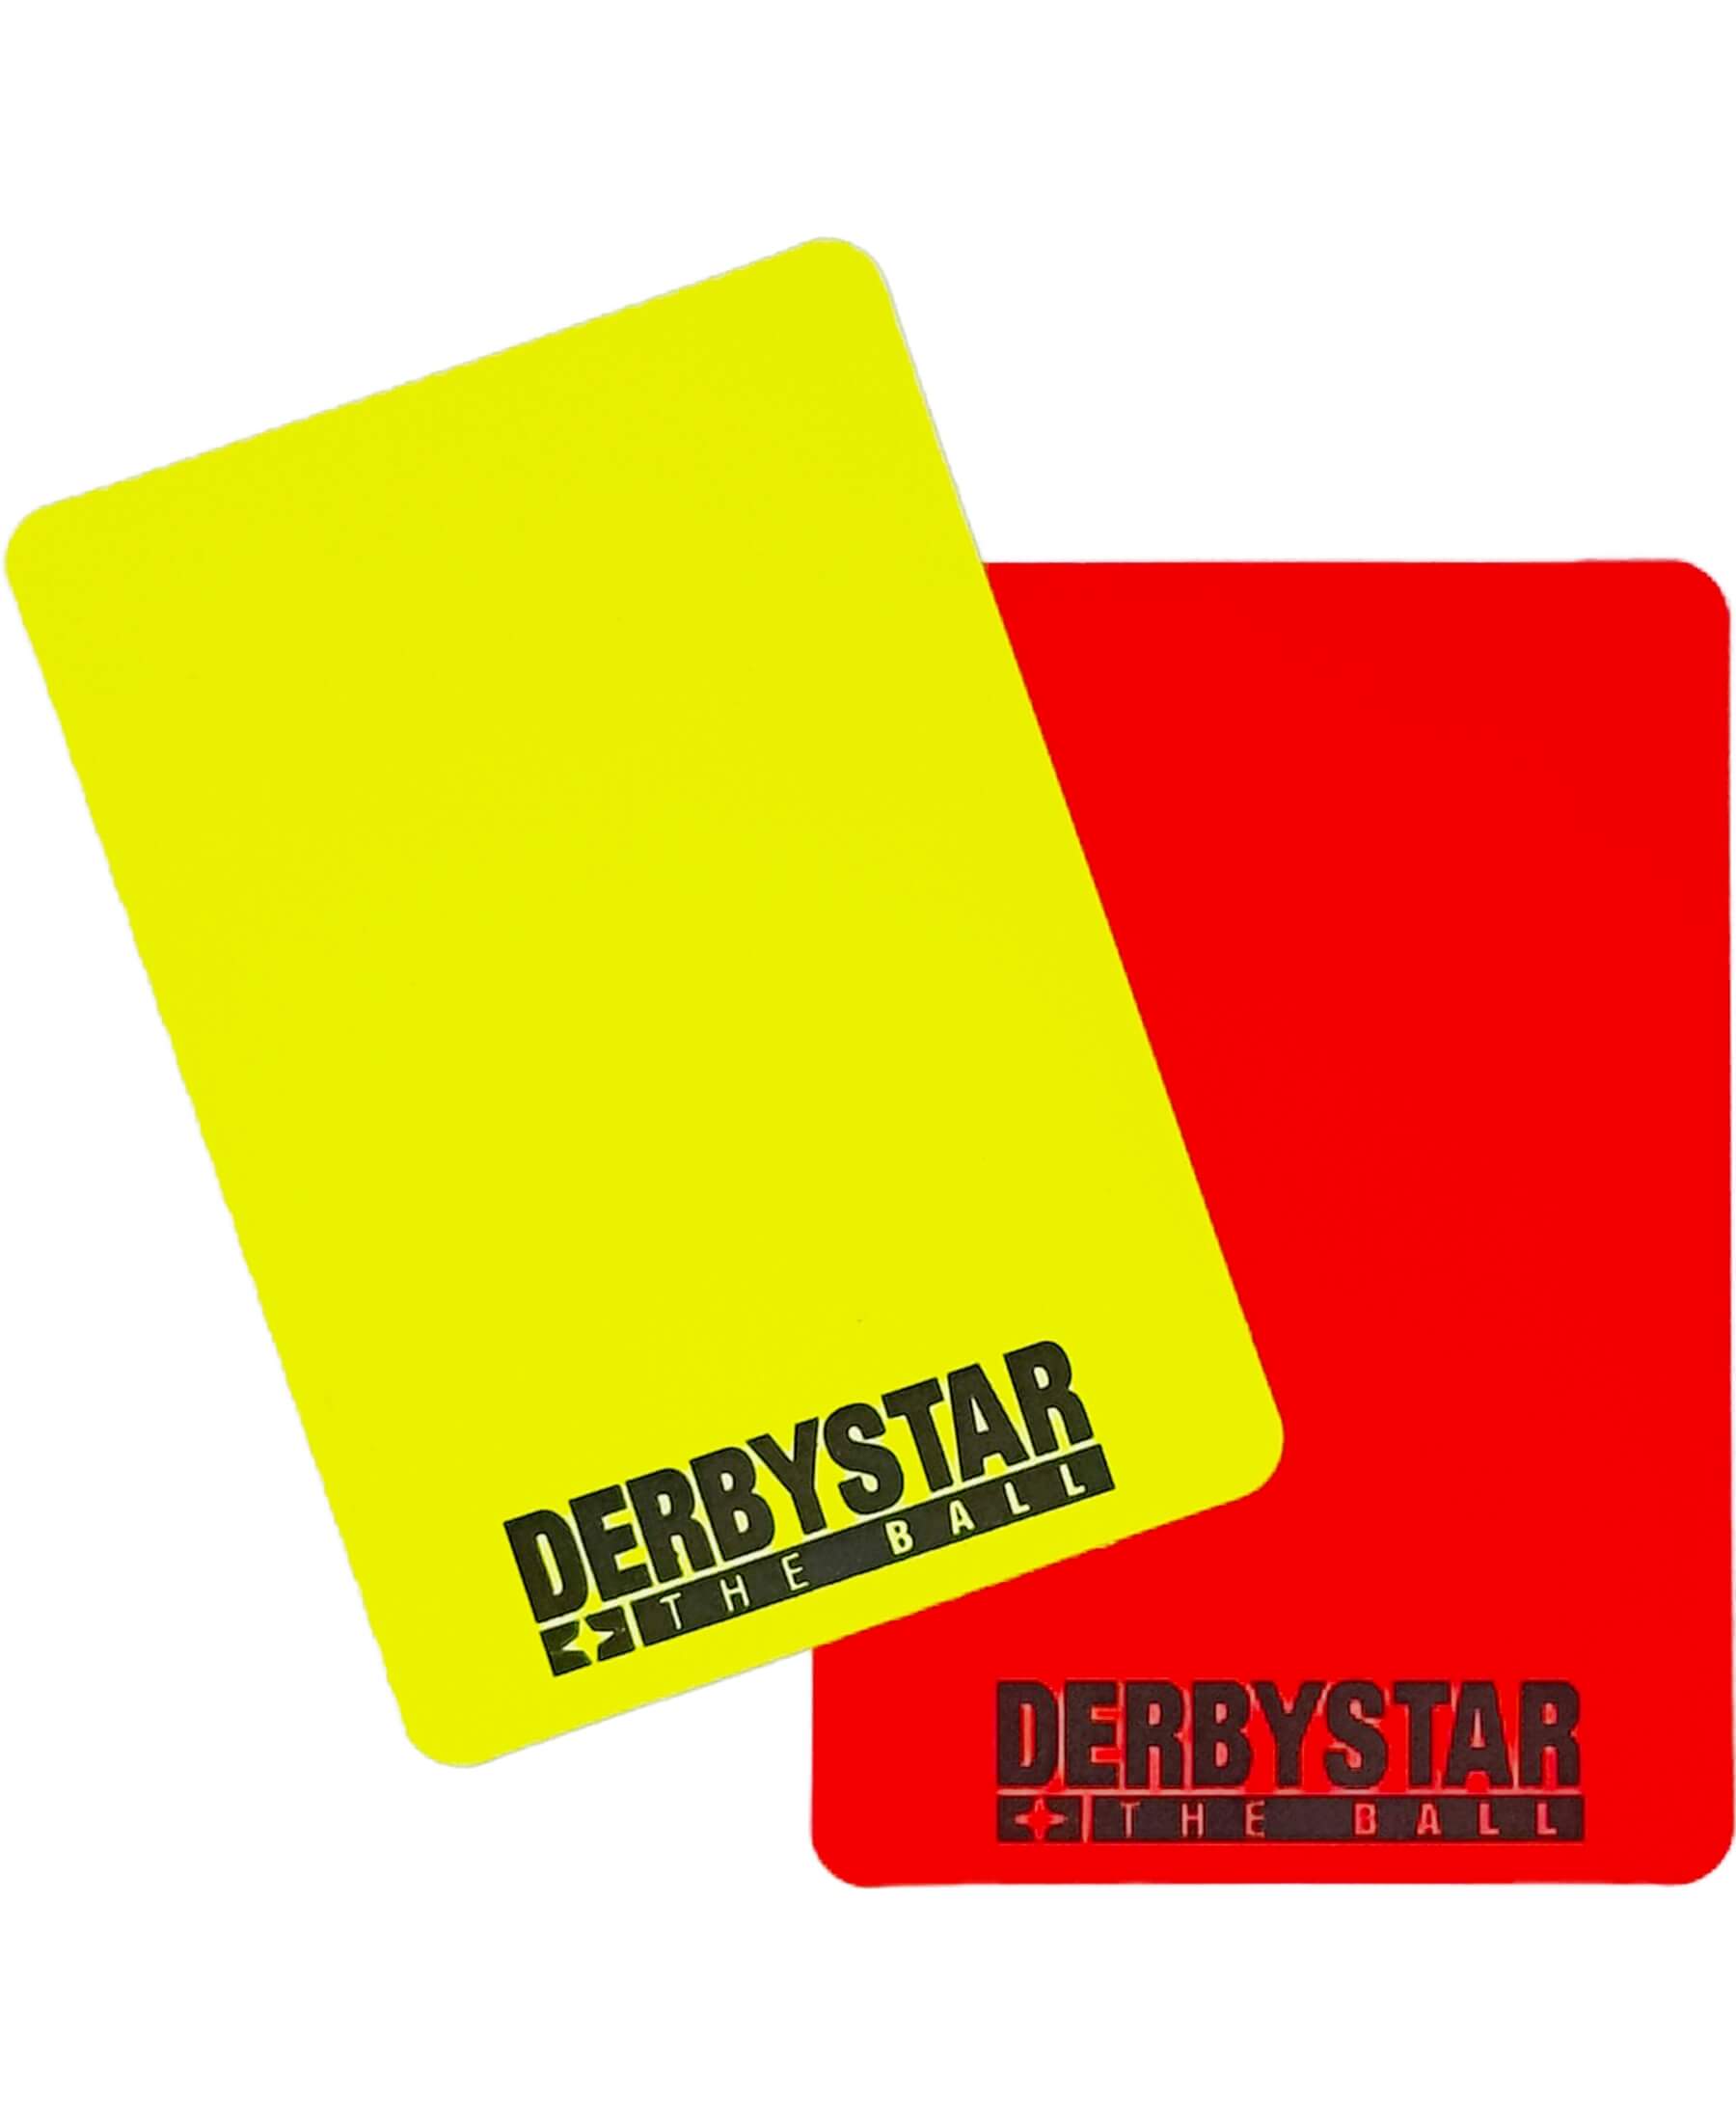 Derbystar Schiedsrichterkarten-Set - Offizielle Ausrüstung für Schiedsrichter. Enthält eine gelbe und eine rote Karte. Hochwertiges Material für präzises Schiedsrichter-Handling. Jetzt bei SHOP4TEAMSPORT erhältlich. Perfekt für Fußballschiedsrichter und andere Sportarten. Bestelle jetzt und sei optimal ausgestattet!